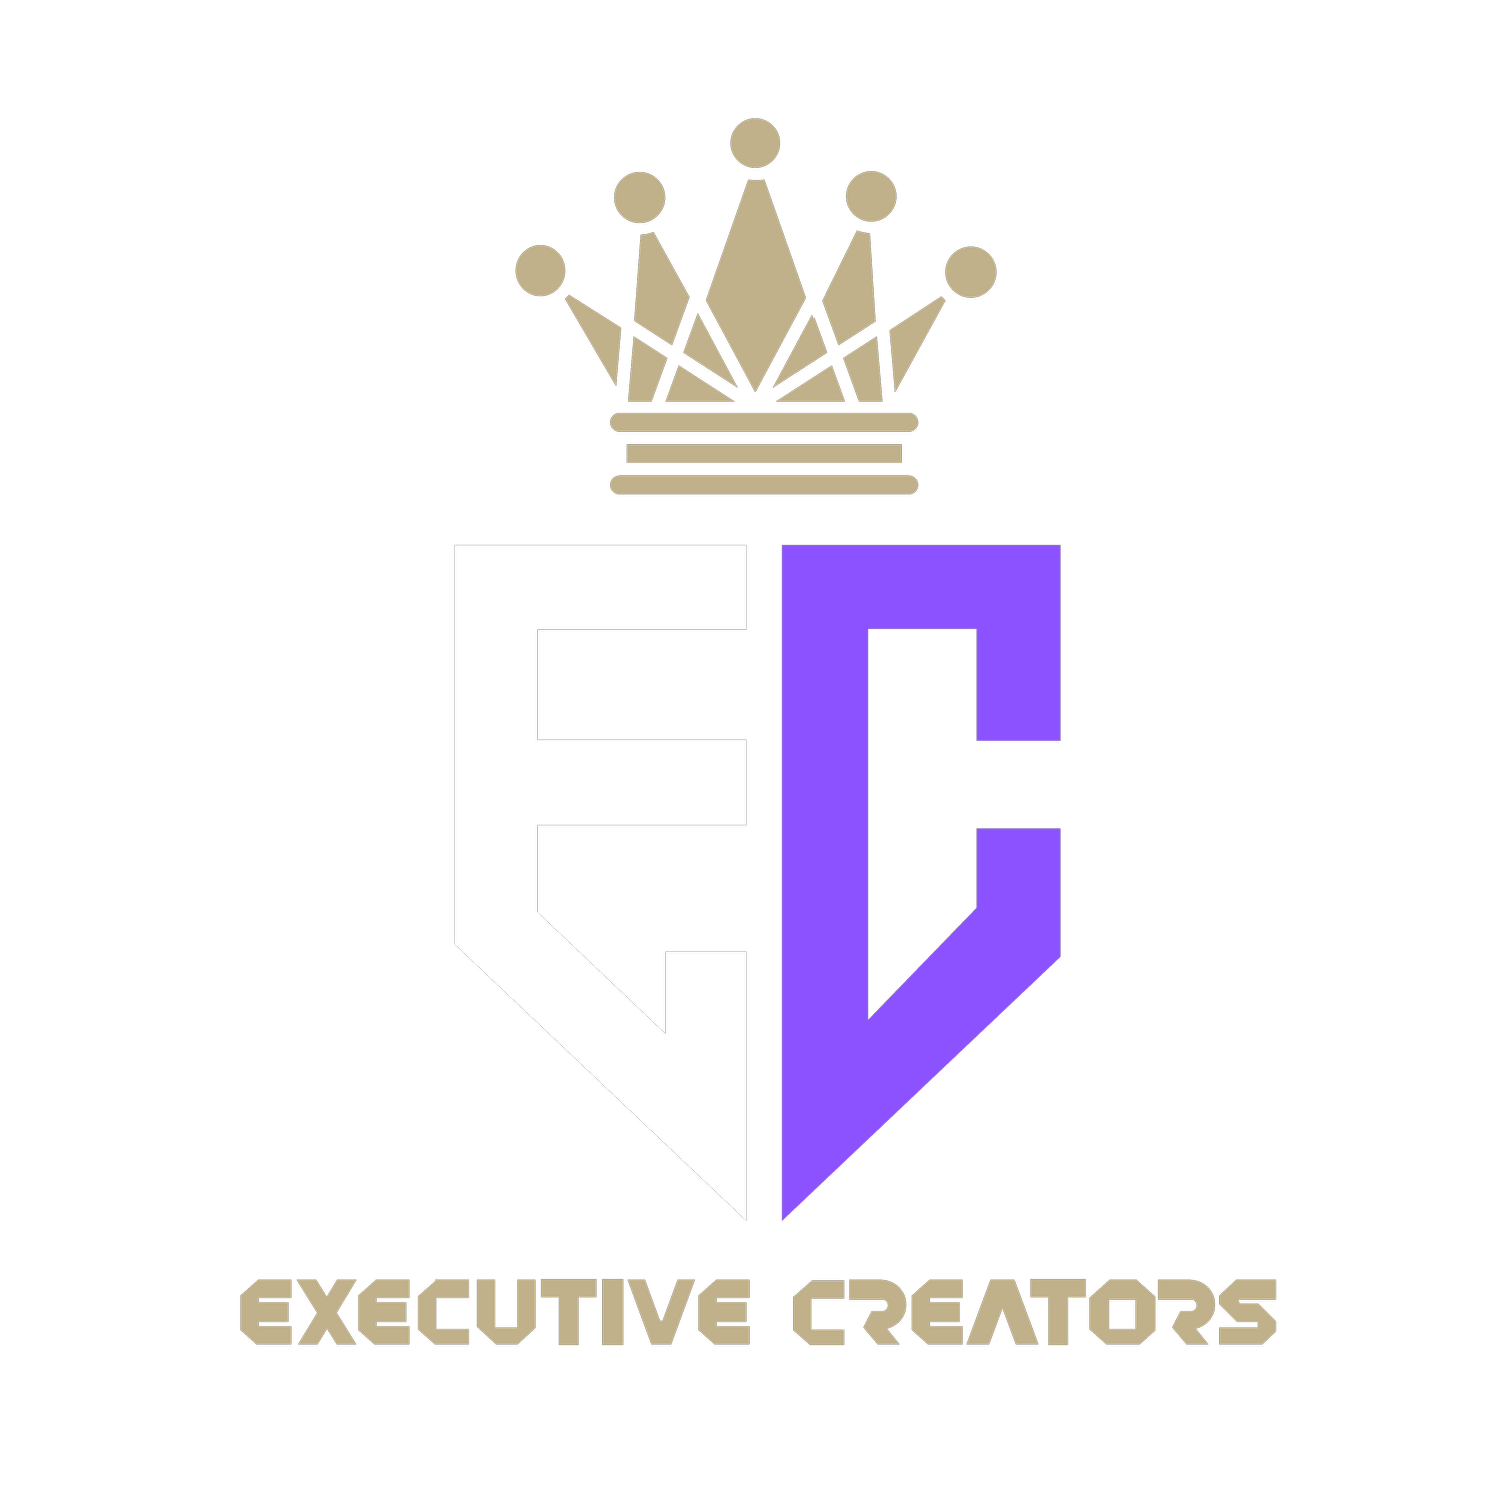 Executive Creators